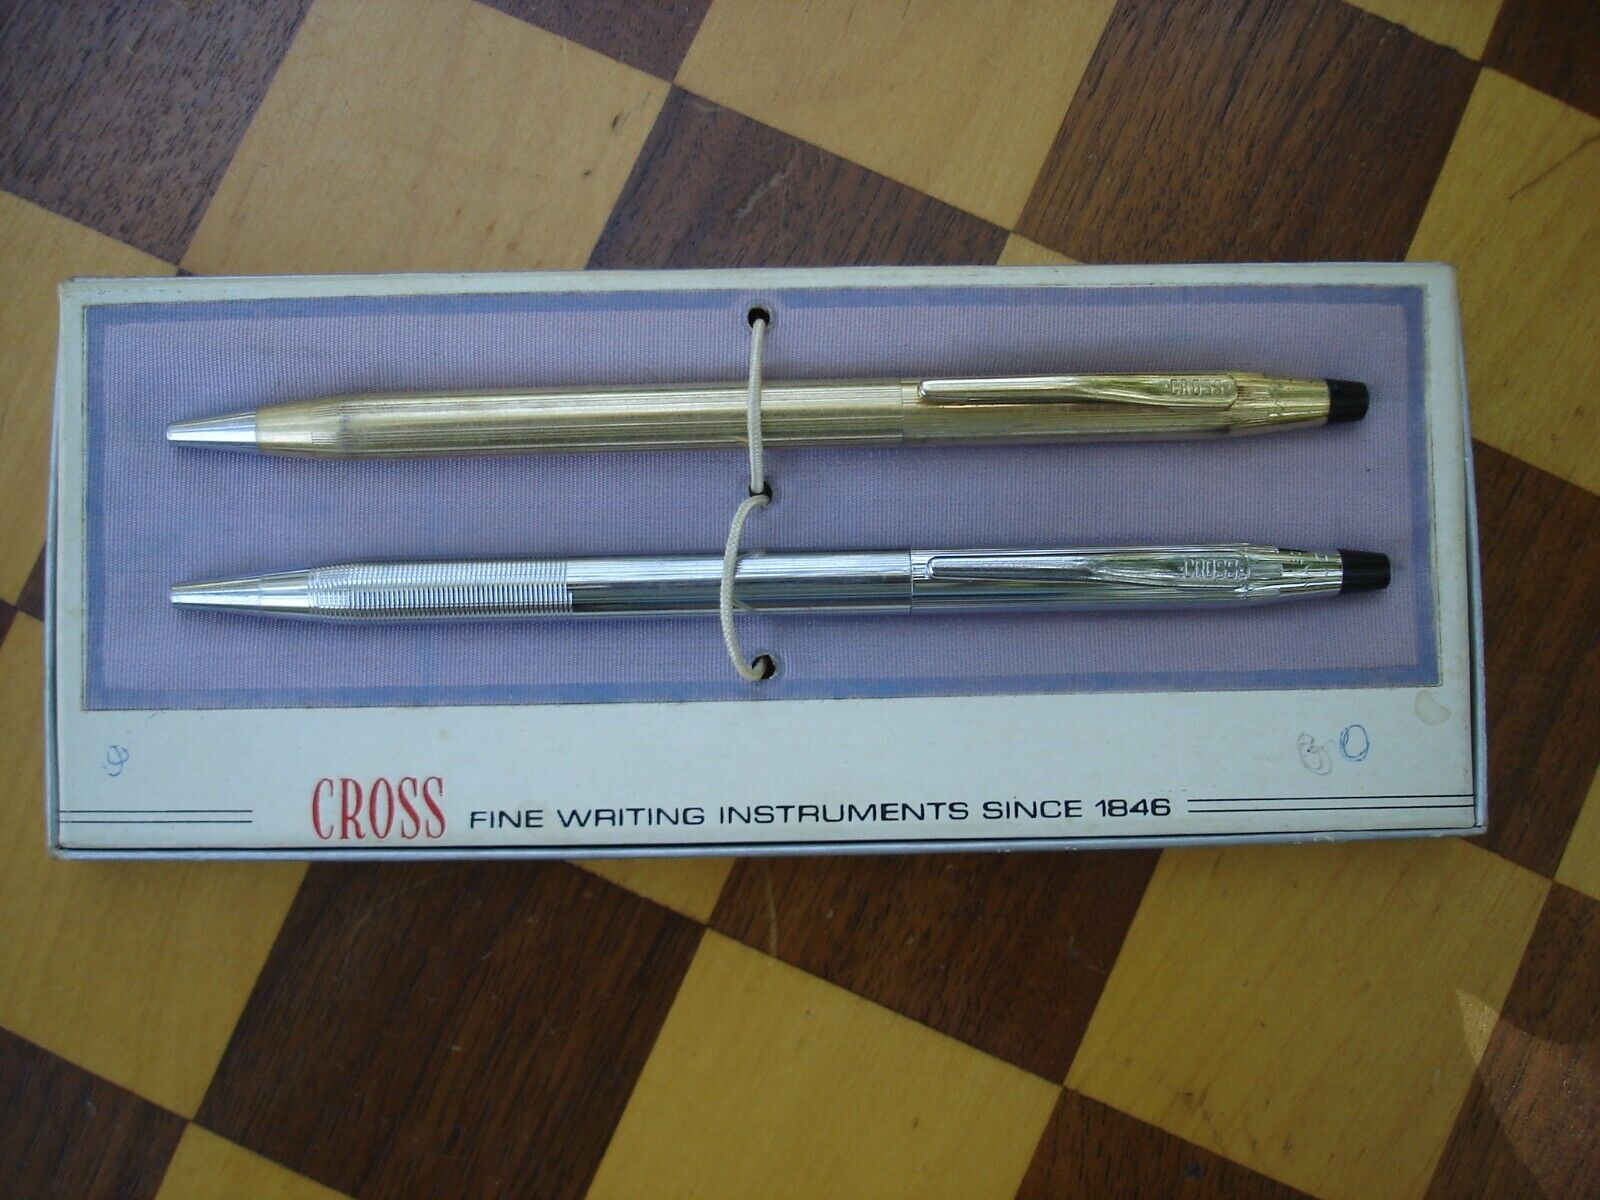 2 Vintage CROSS Pens....Gold F. Pen Plus Chrome Cross Pen in Box w Brochure